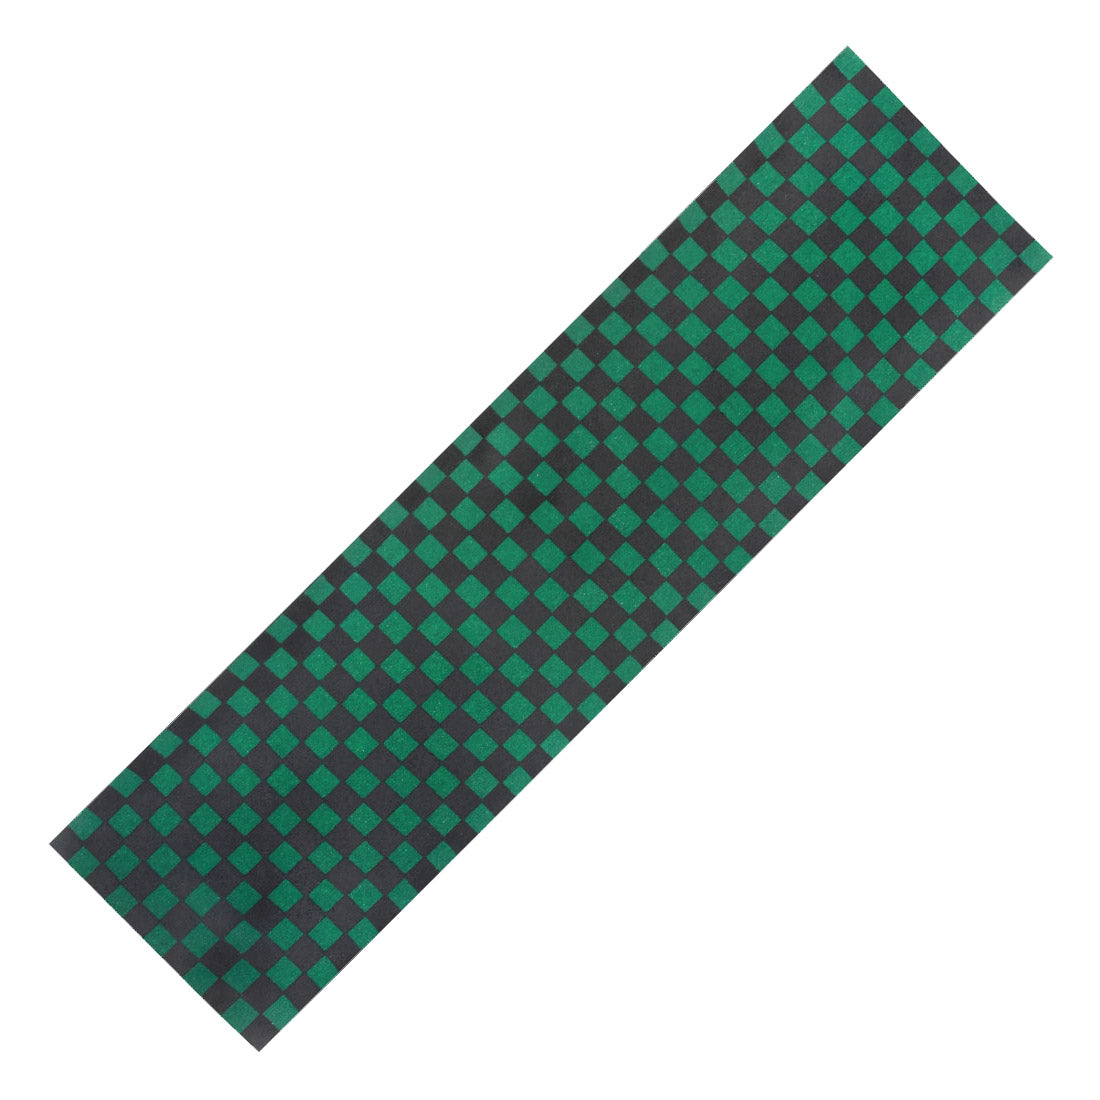 Fruity Griptape - Checkered Black Green Check Griptape